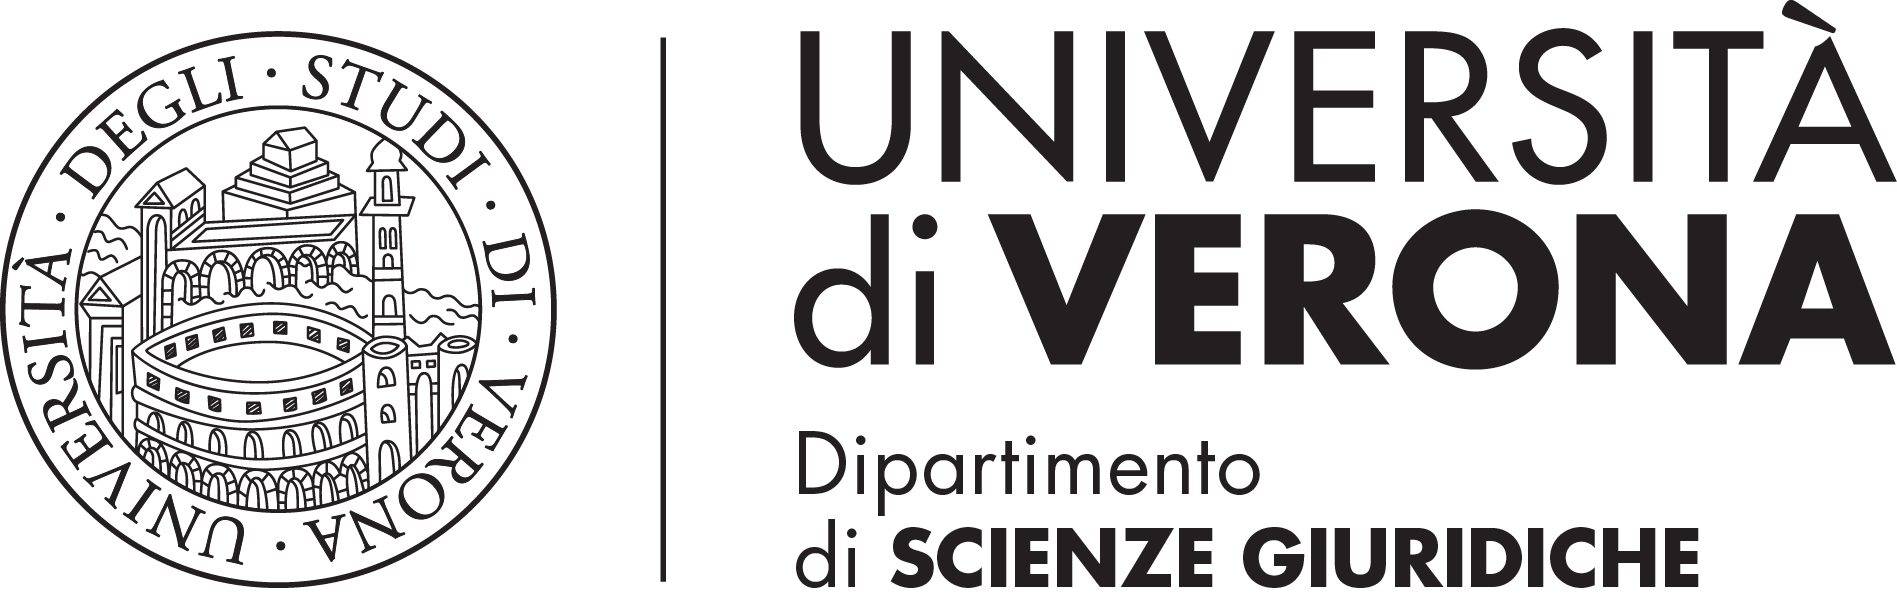 Università degli Studi di Verona - Dipartimento di Scienze Giuridiche